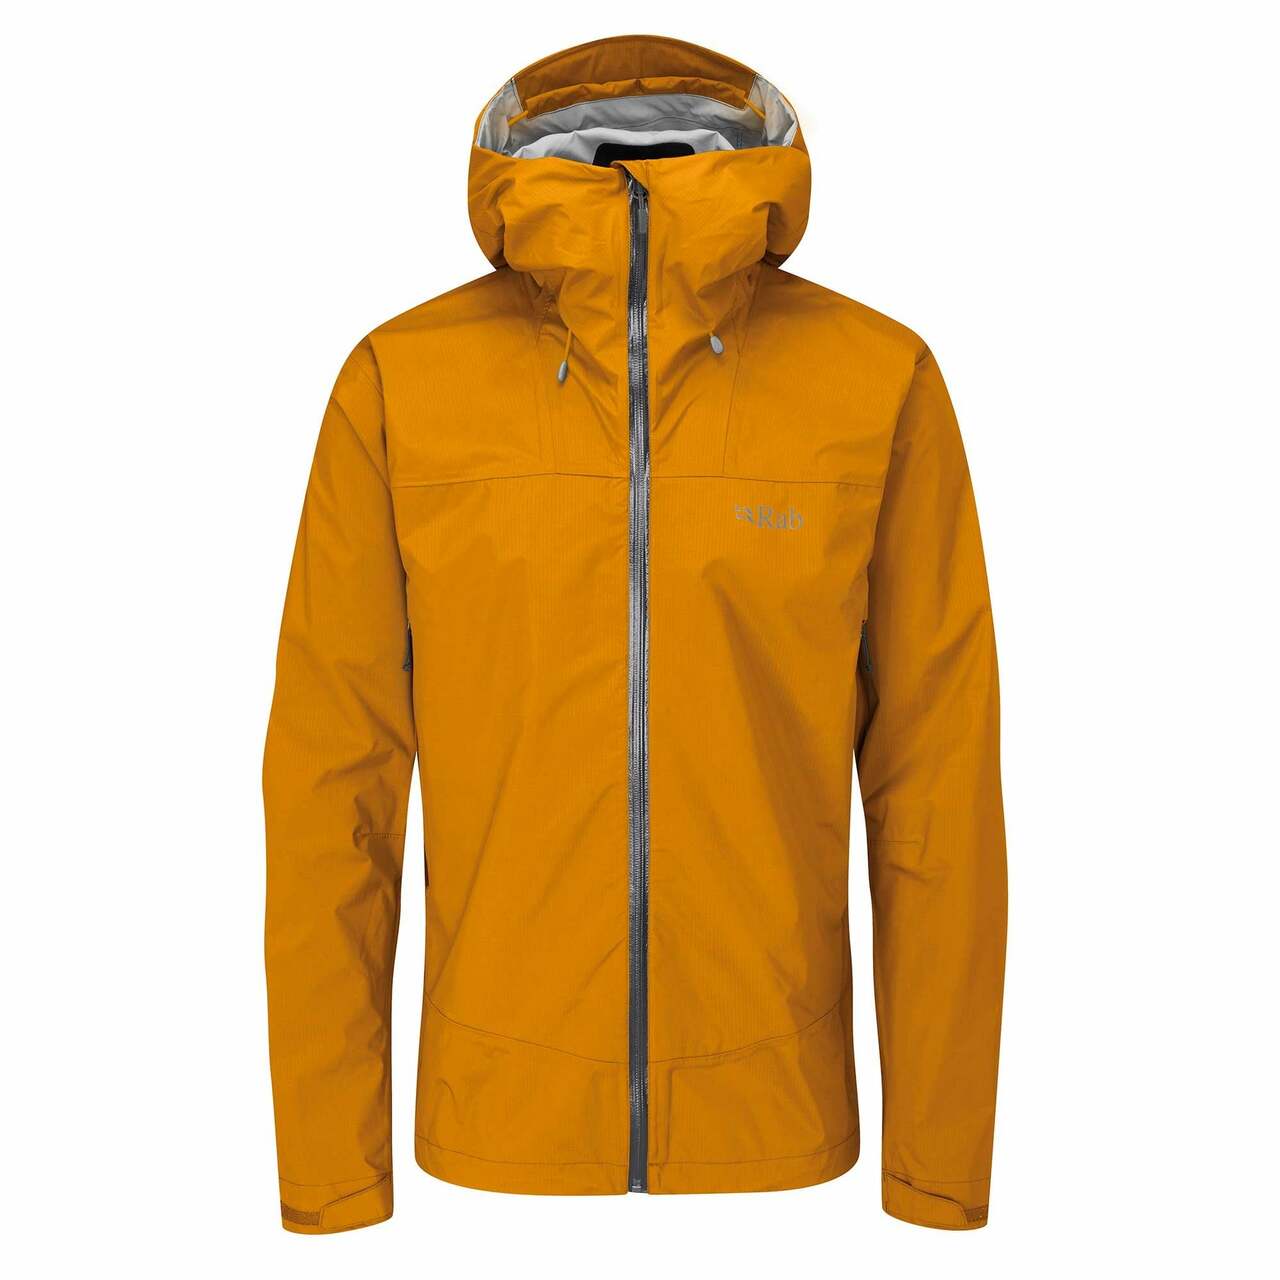 Rab Downpour Plus 2.0 Jacket, UK